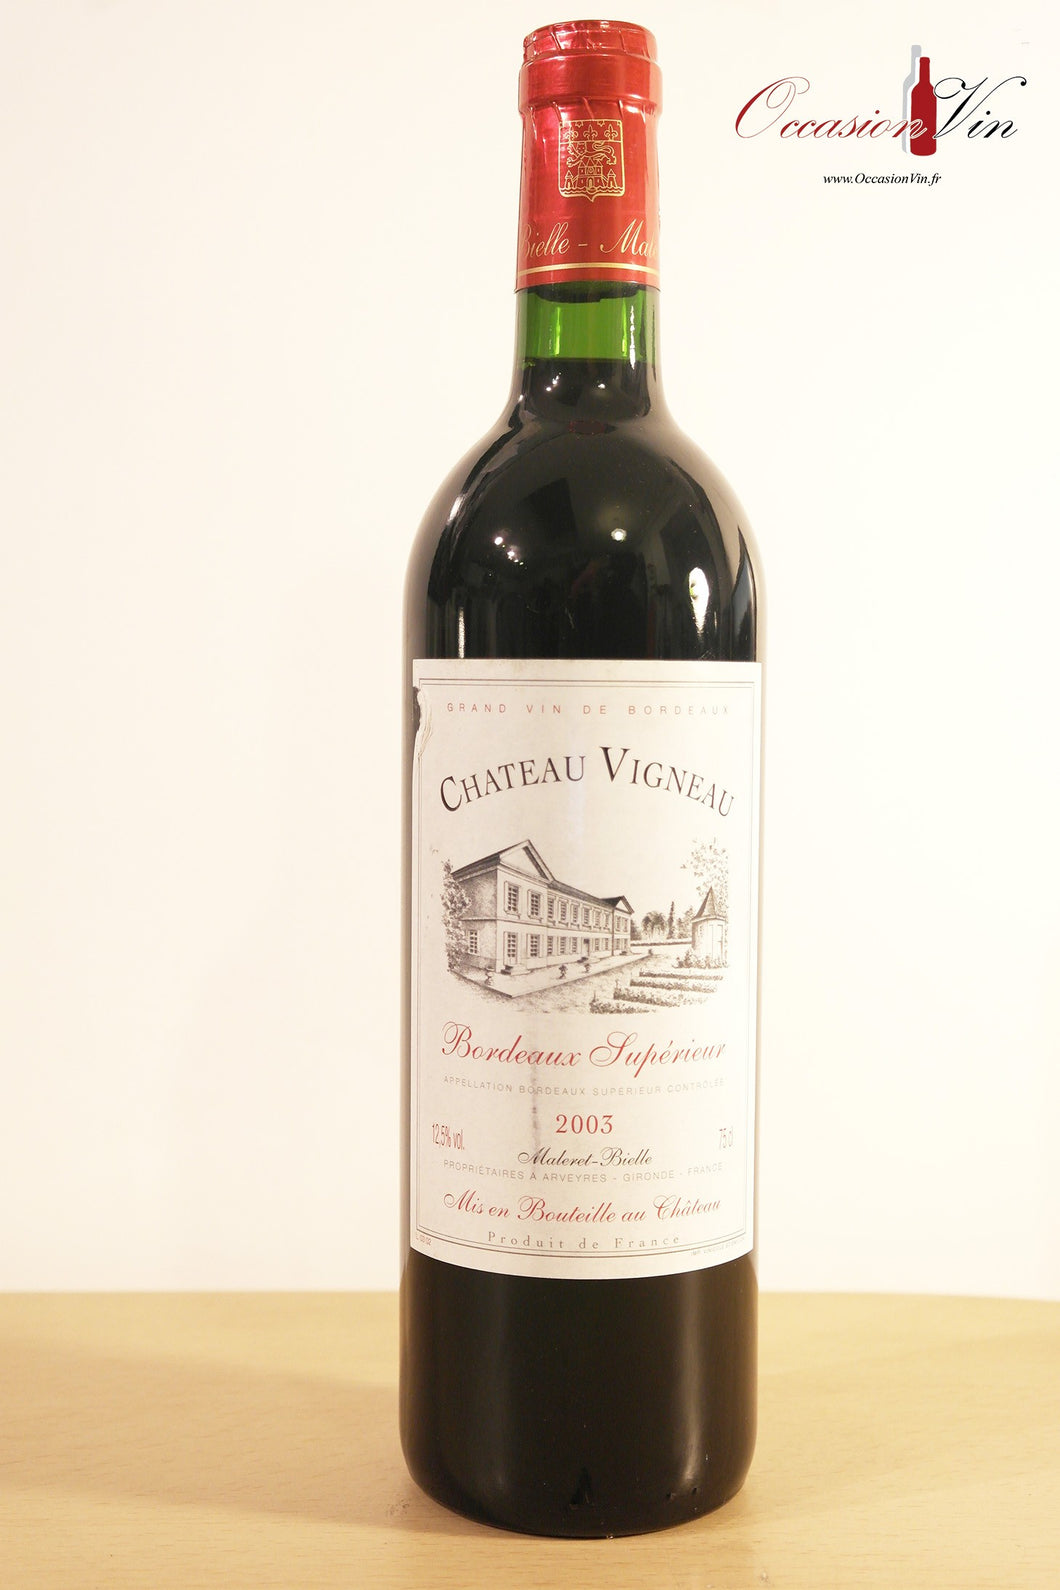 Château Vigneau Vin 2003